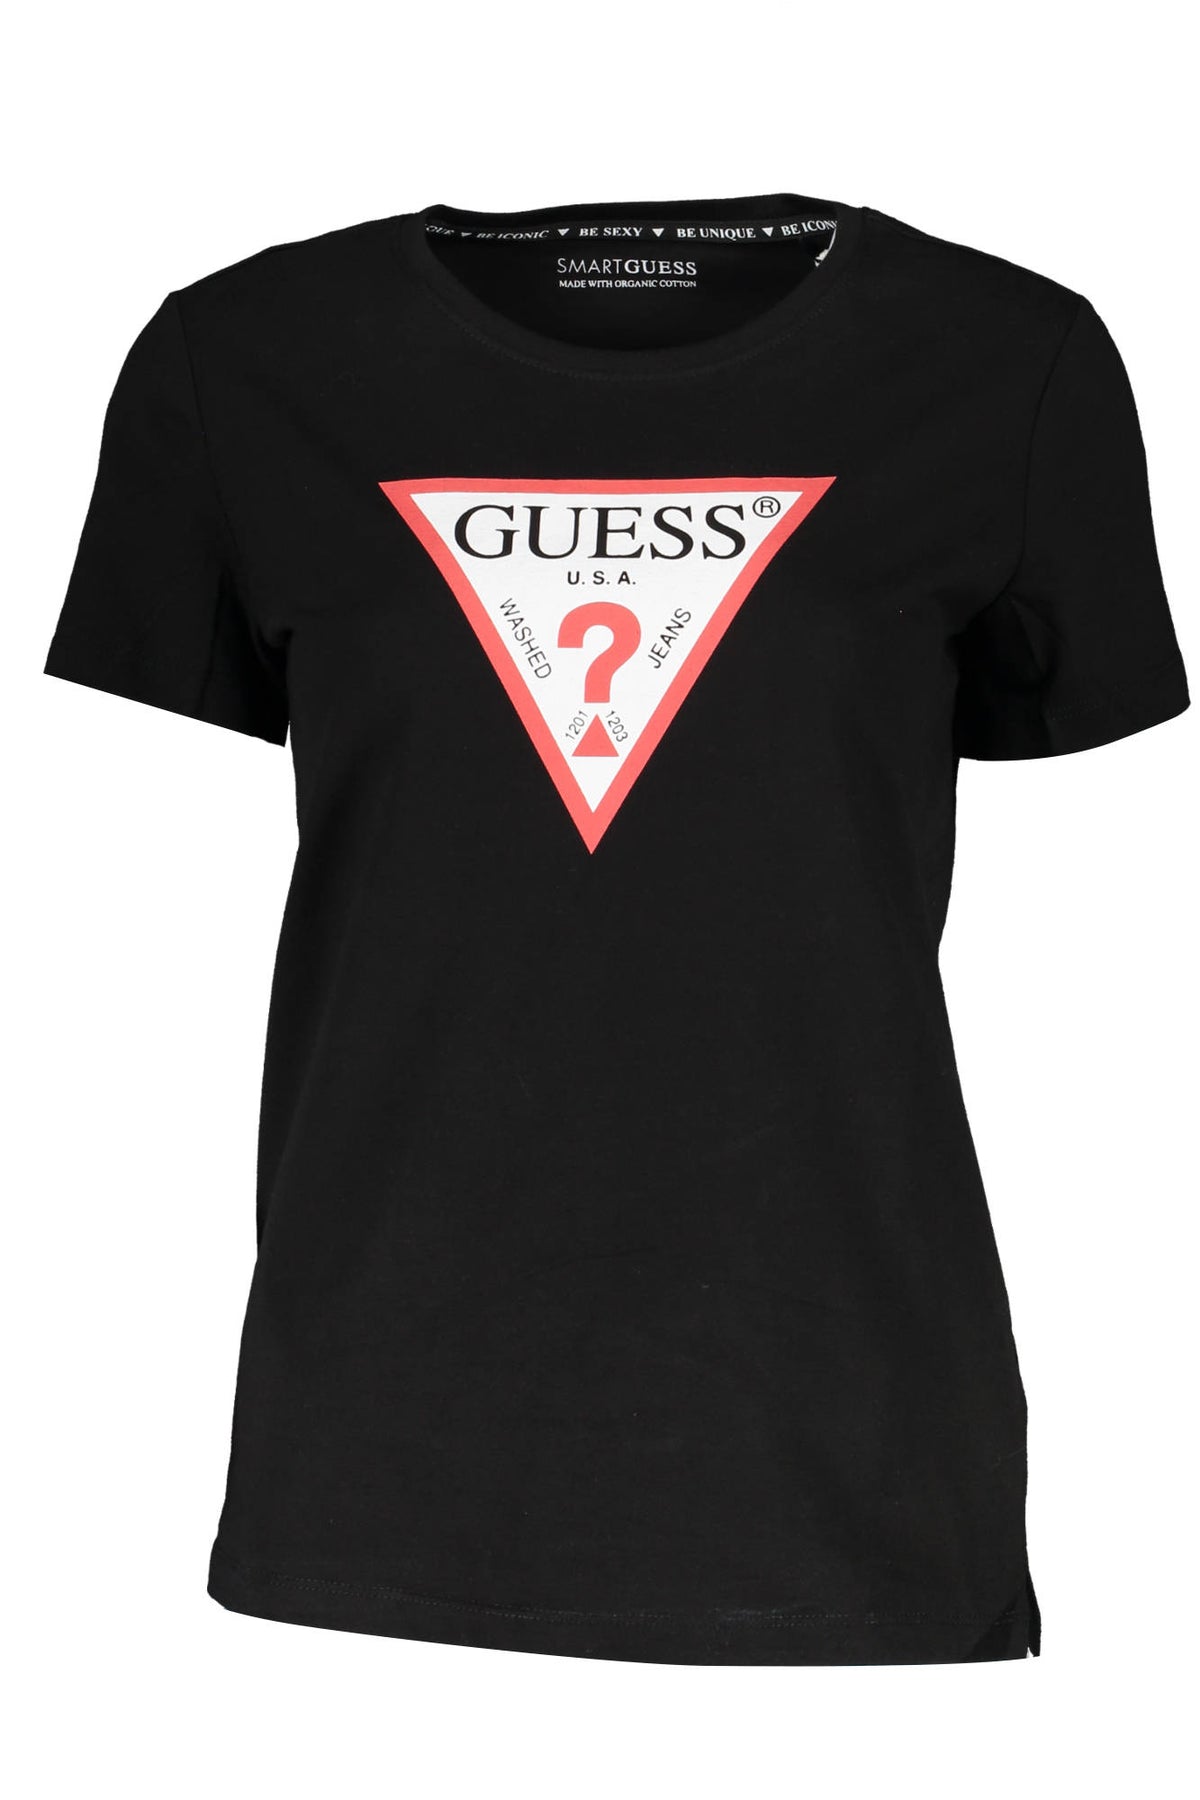 GUESS JEANS Damen T-Shirt Oberteil mit Rundhalsausschnitt, Kurzarm